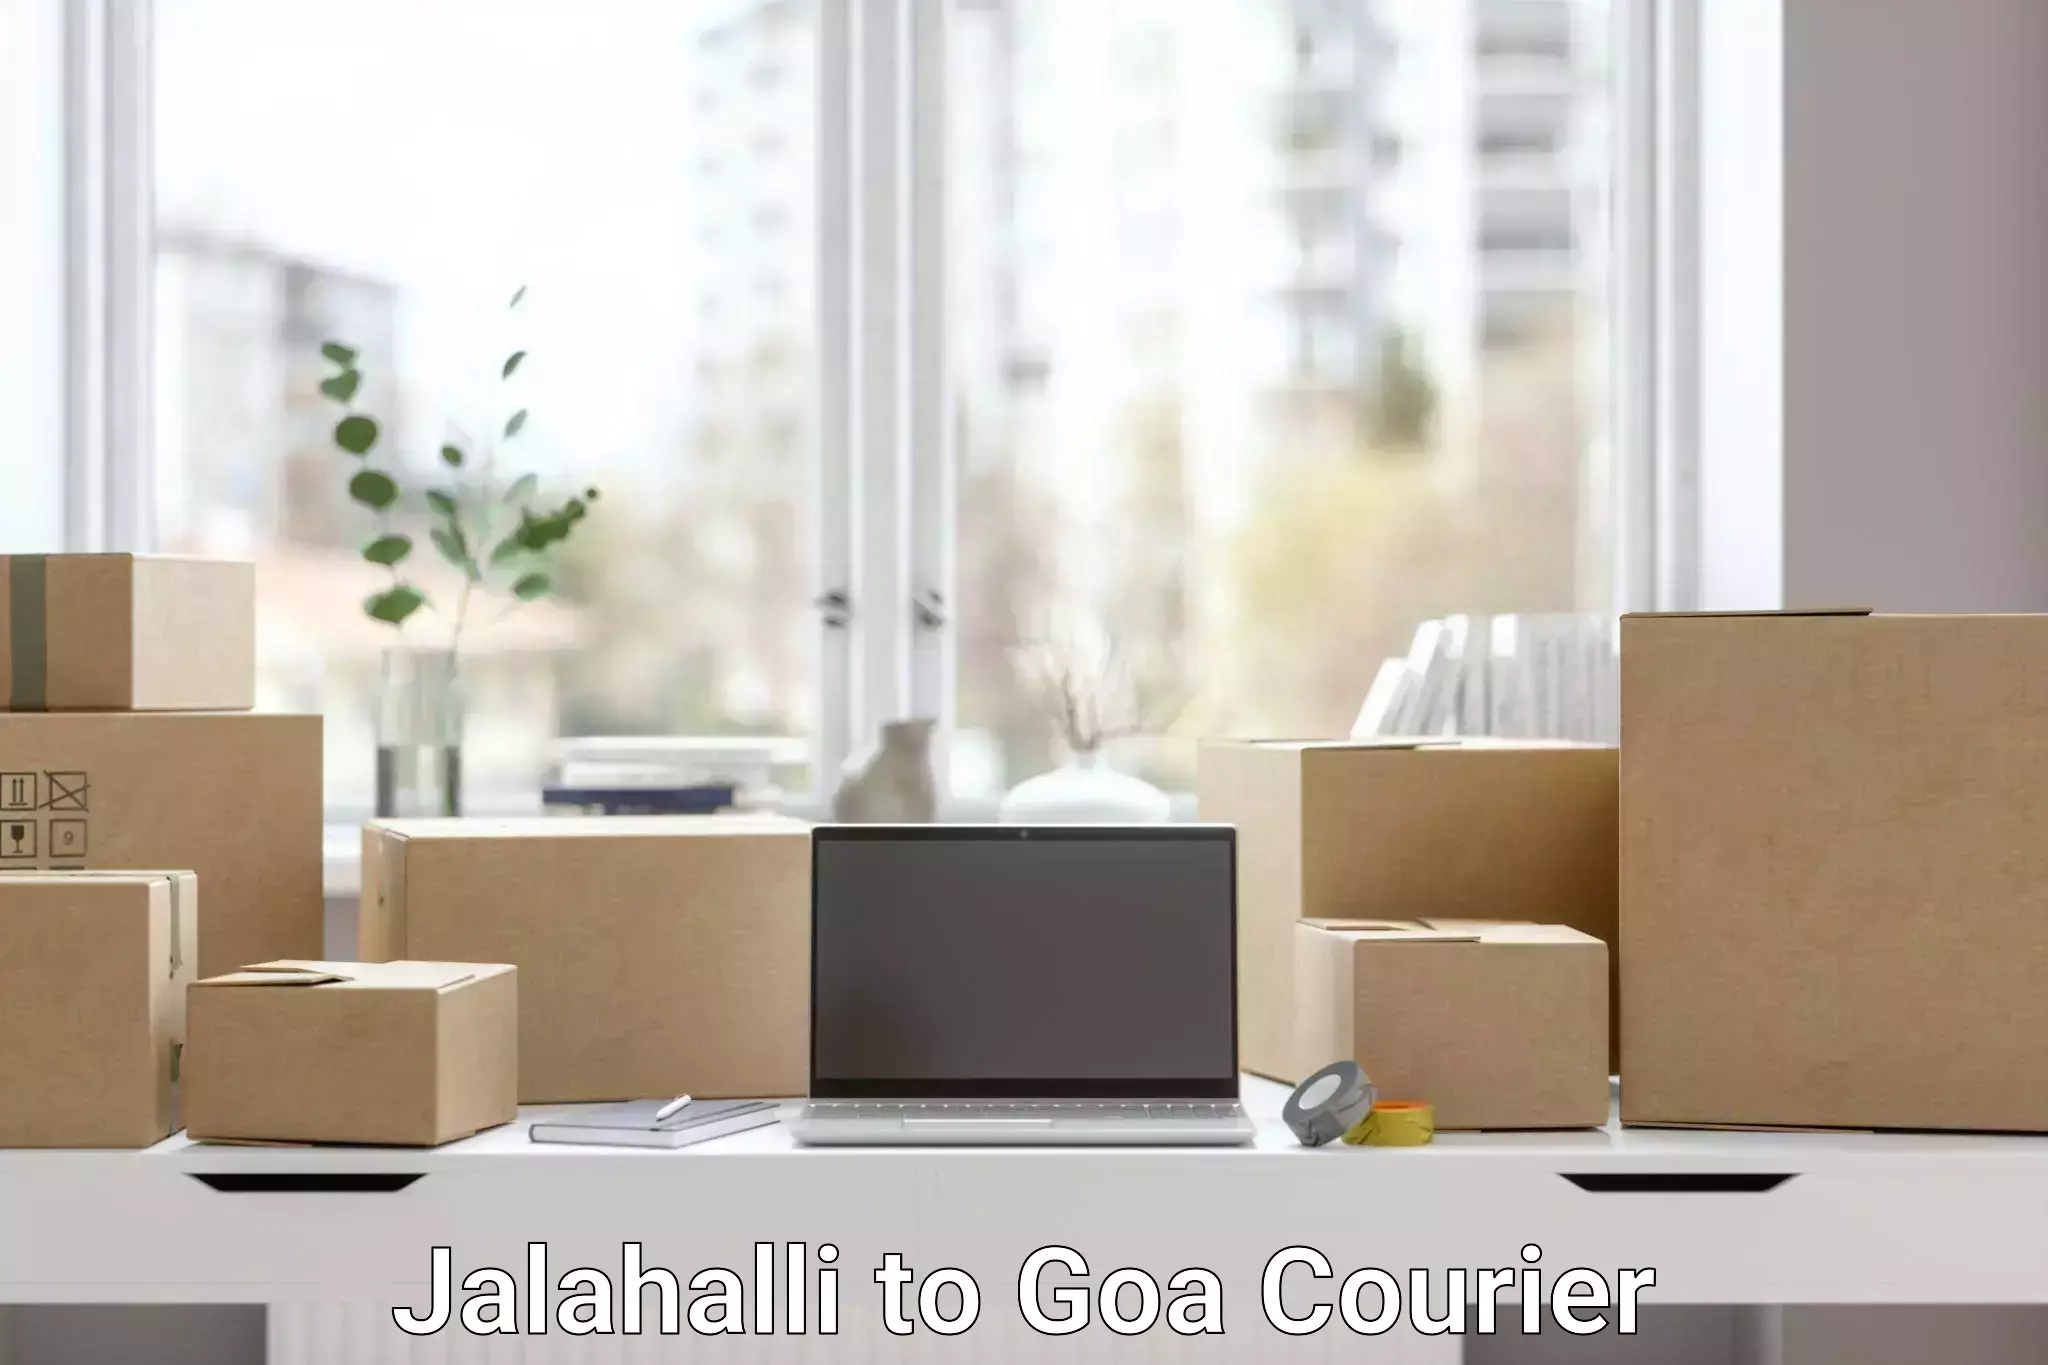 Urgent courier needs Jalahalli to Ponda